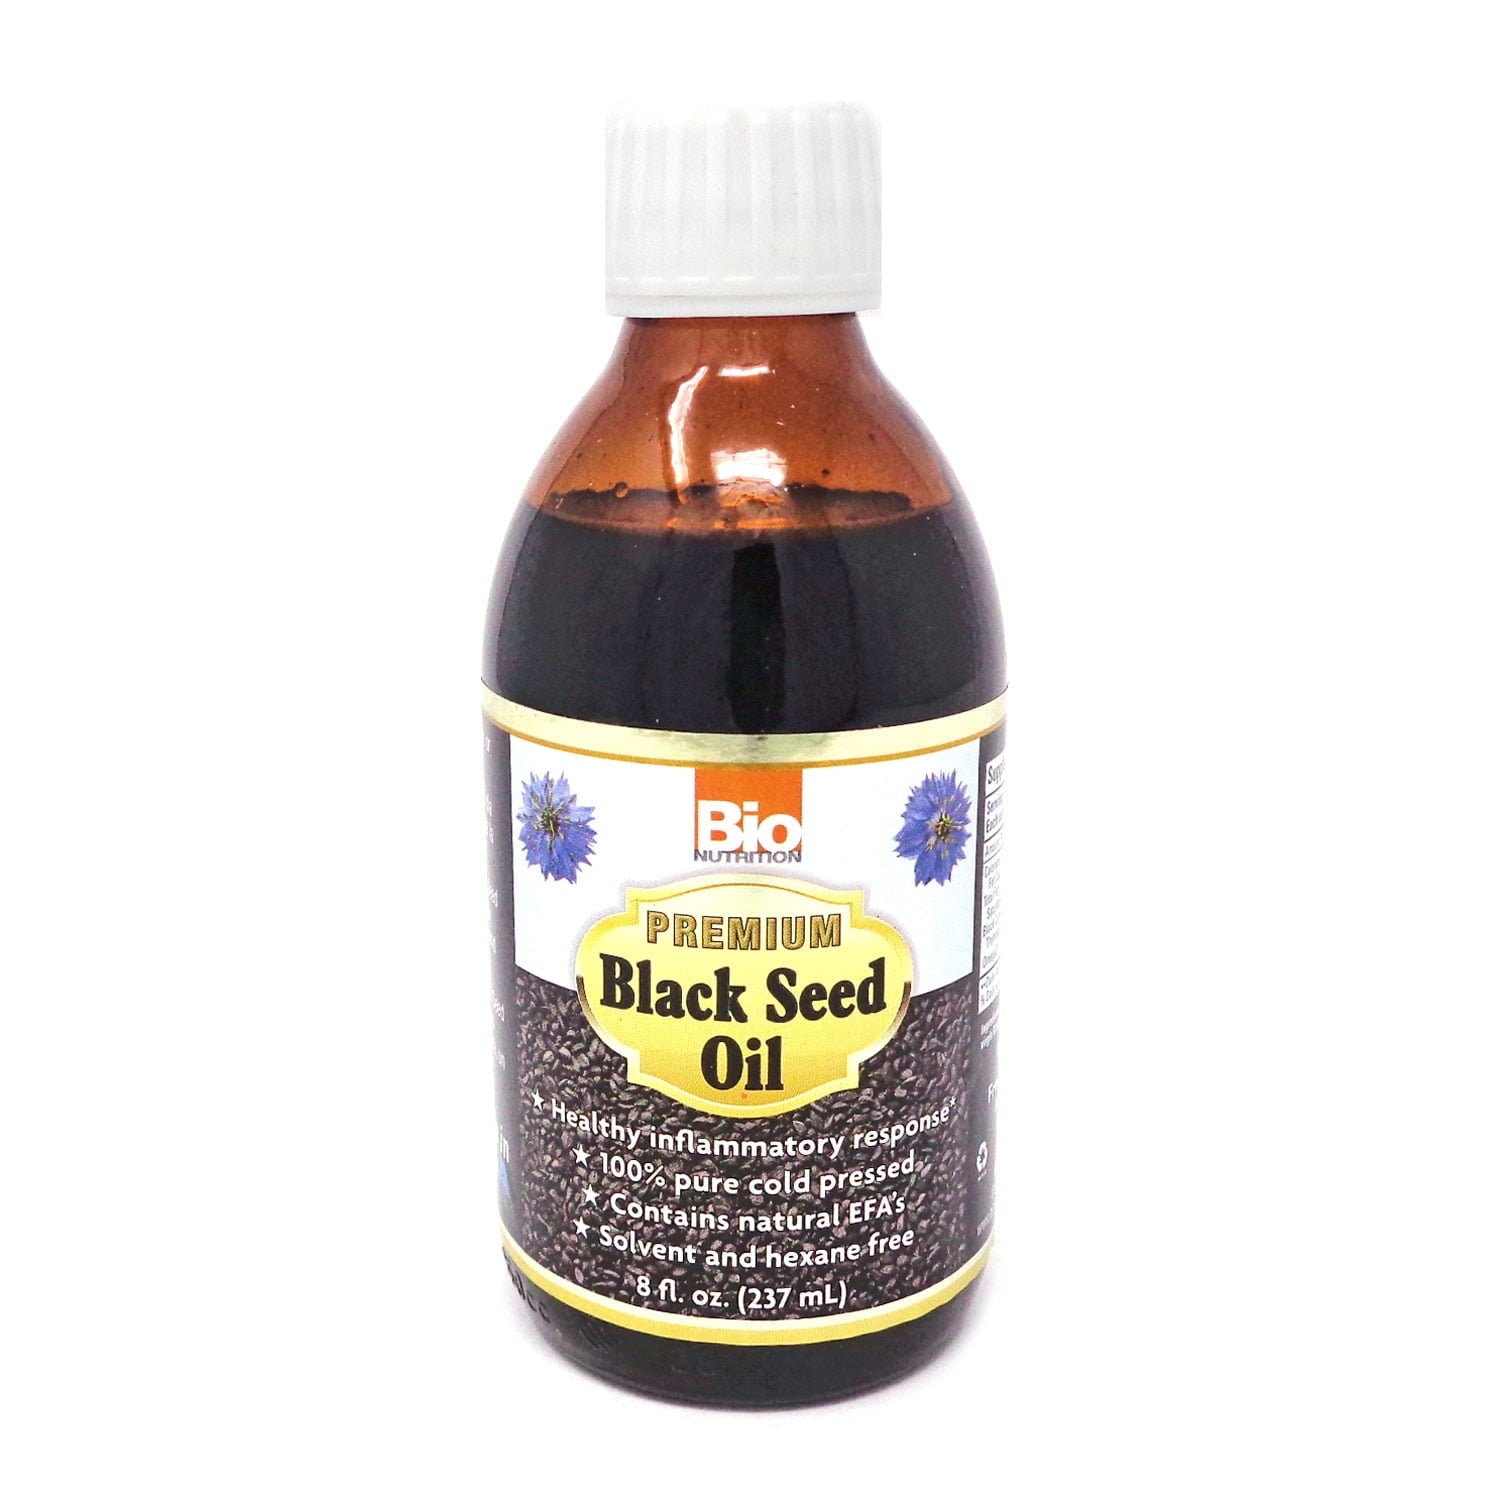 Bio Nutrition Black Seed Oil 8 oz Bottle